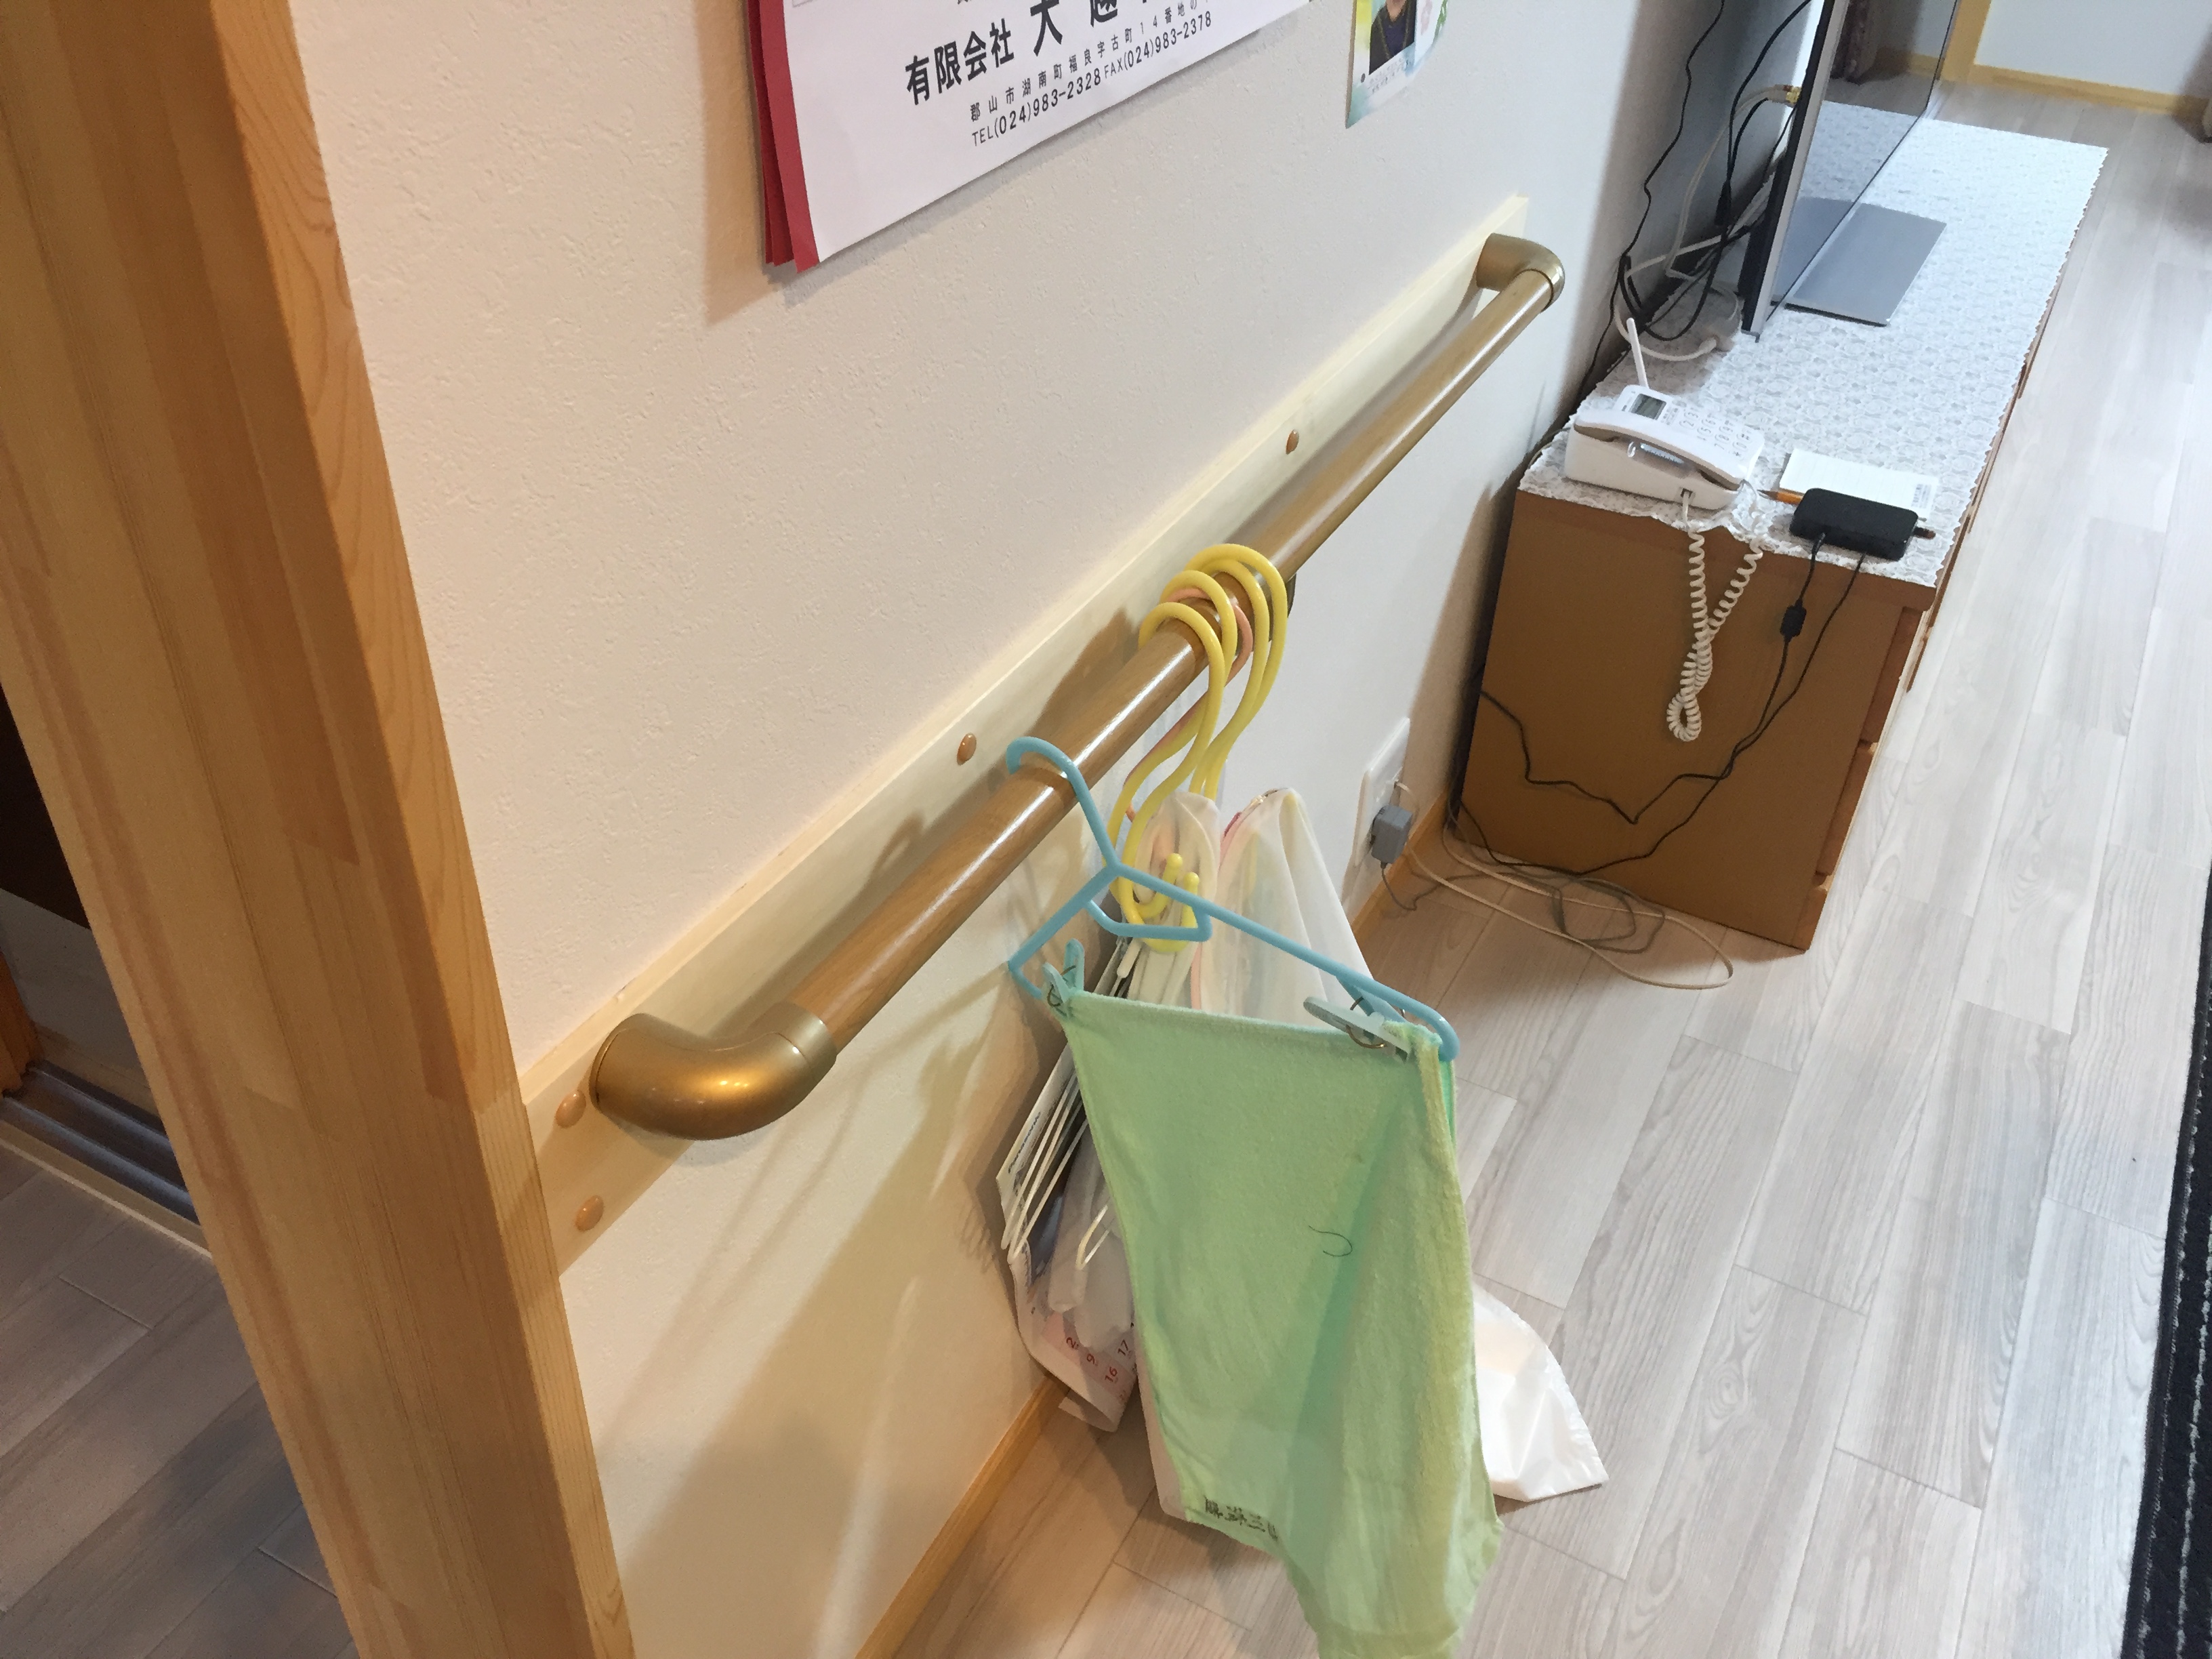 福島県耶麻郡猪苗代町の住宅で、介護保険を利用して手摺を設置した手摺リフォーム事例